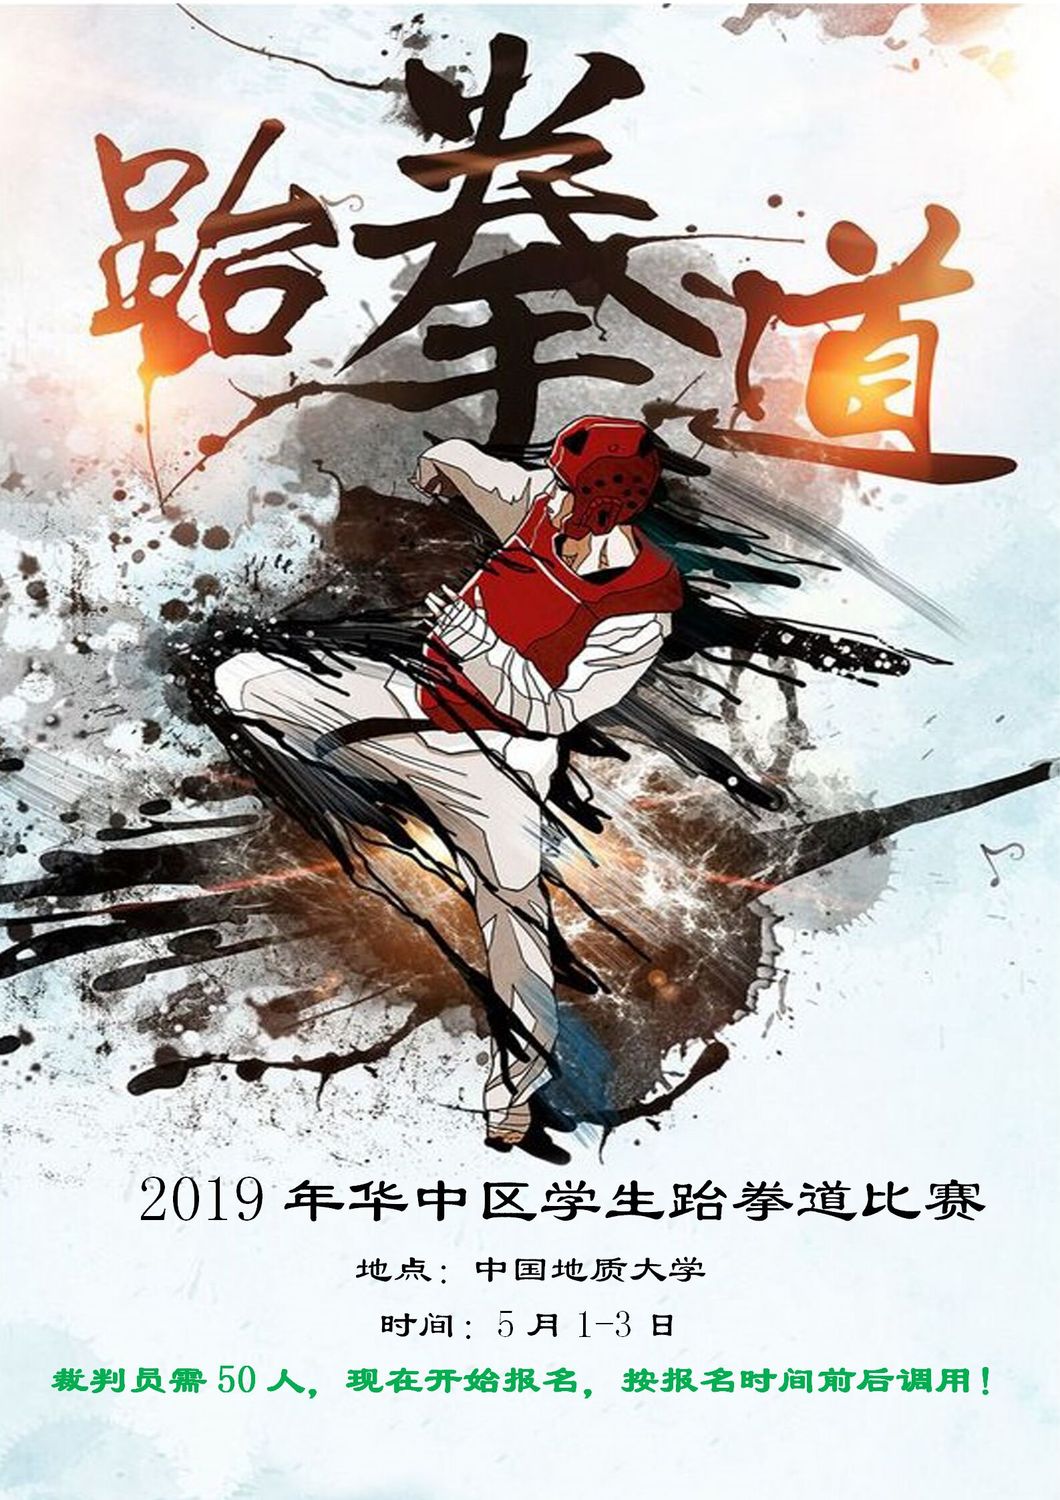 赛事1-2019年华中区学生跆拳道比赛5月1日-3日_01.jpg